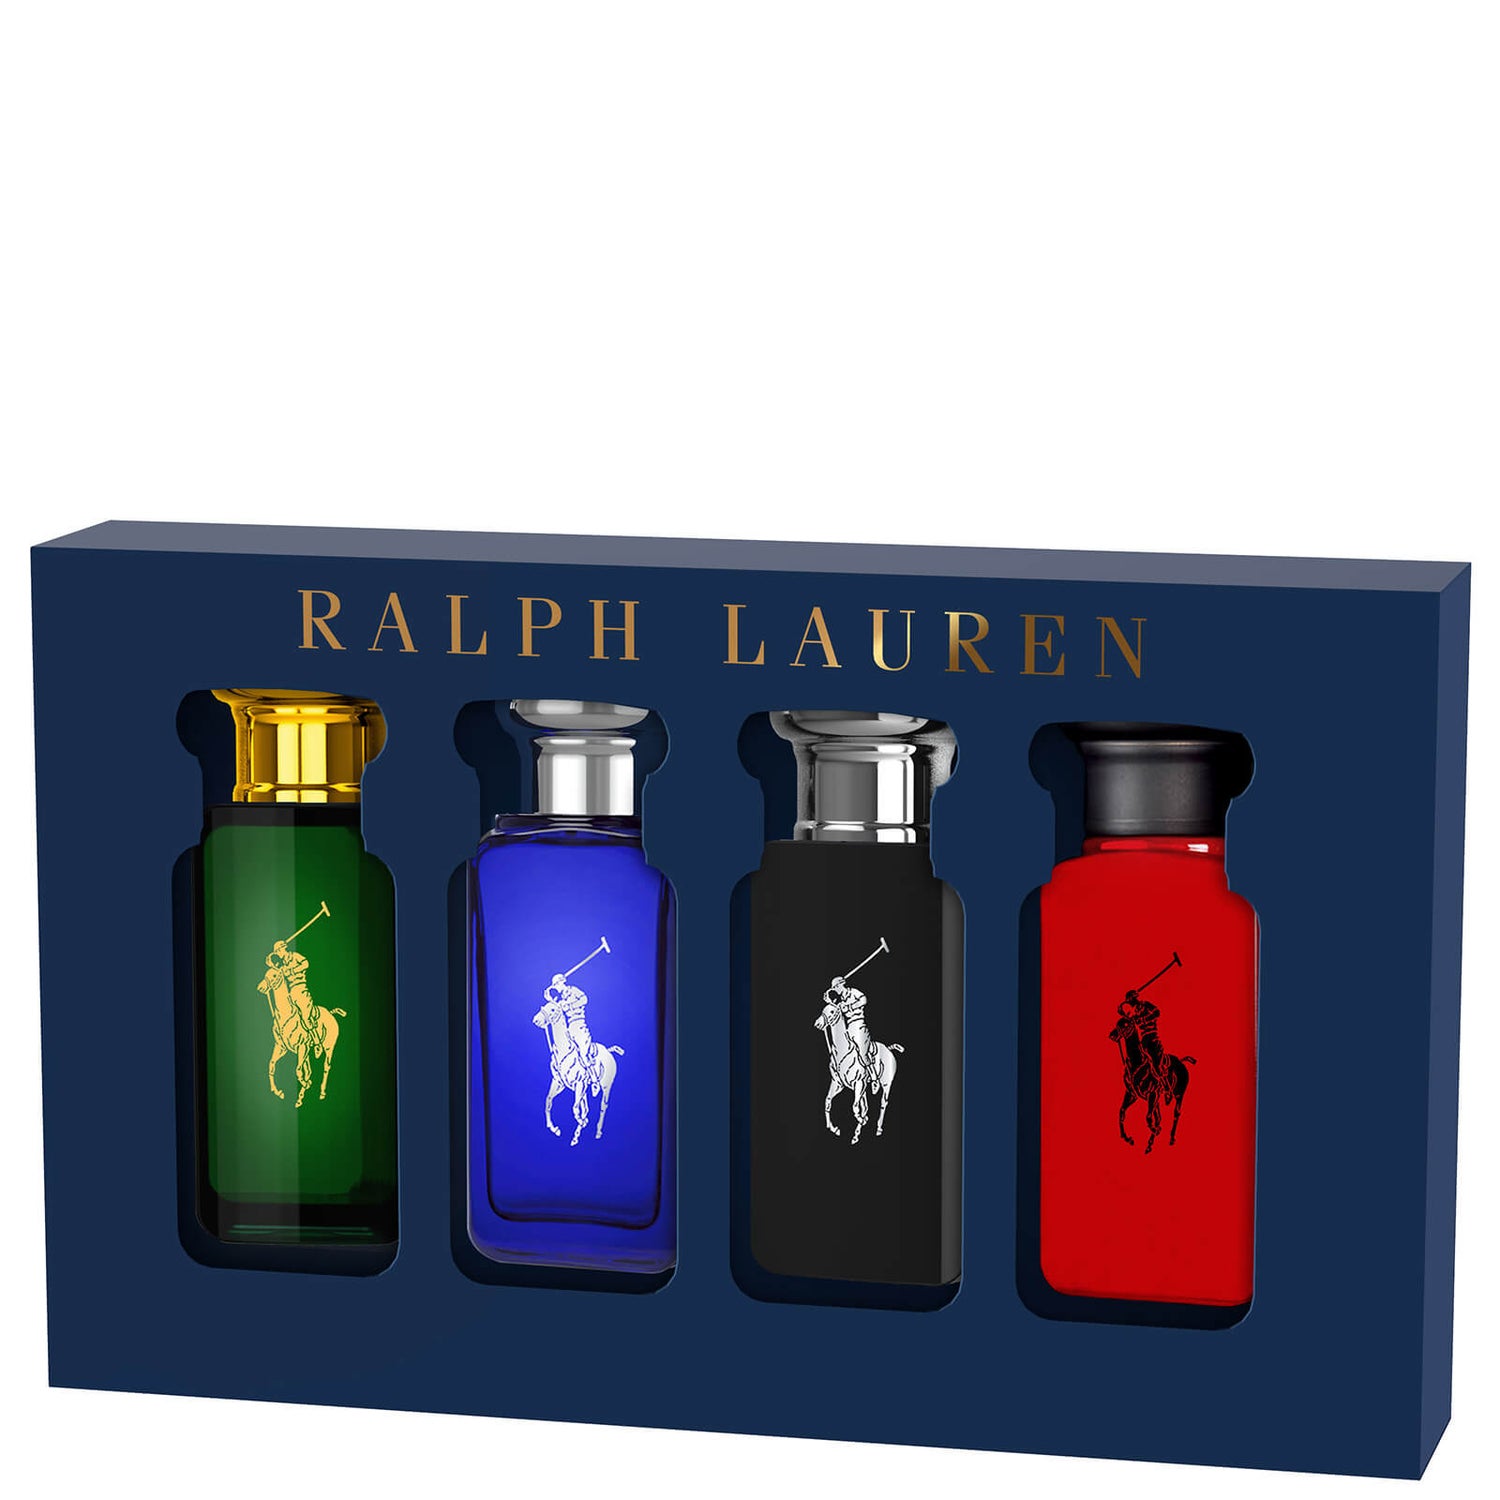 Coffret cadeau de l'eau de toilette Ralph Lauren World of Polo Collection 4 x 30ml (valeur 60,00 €)